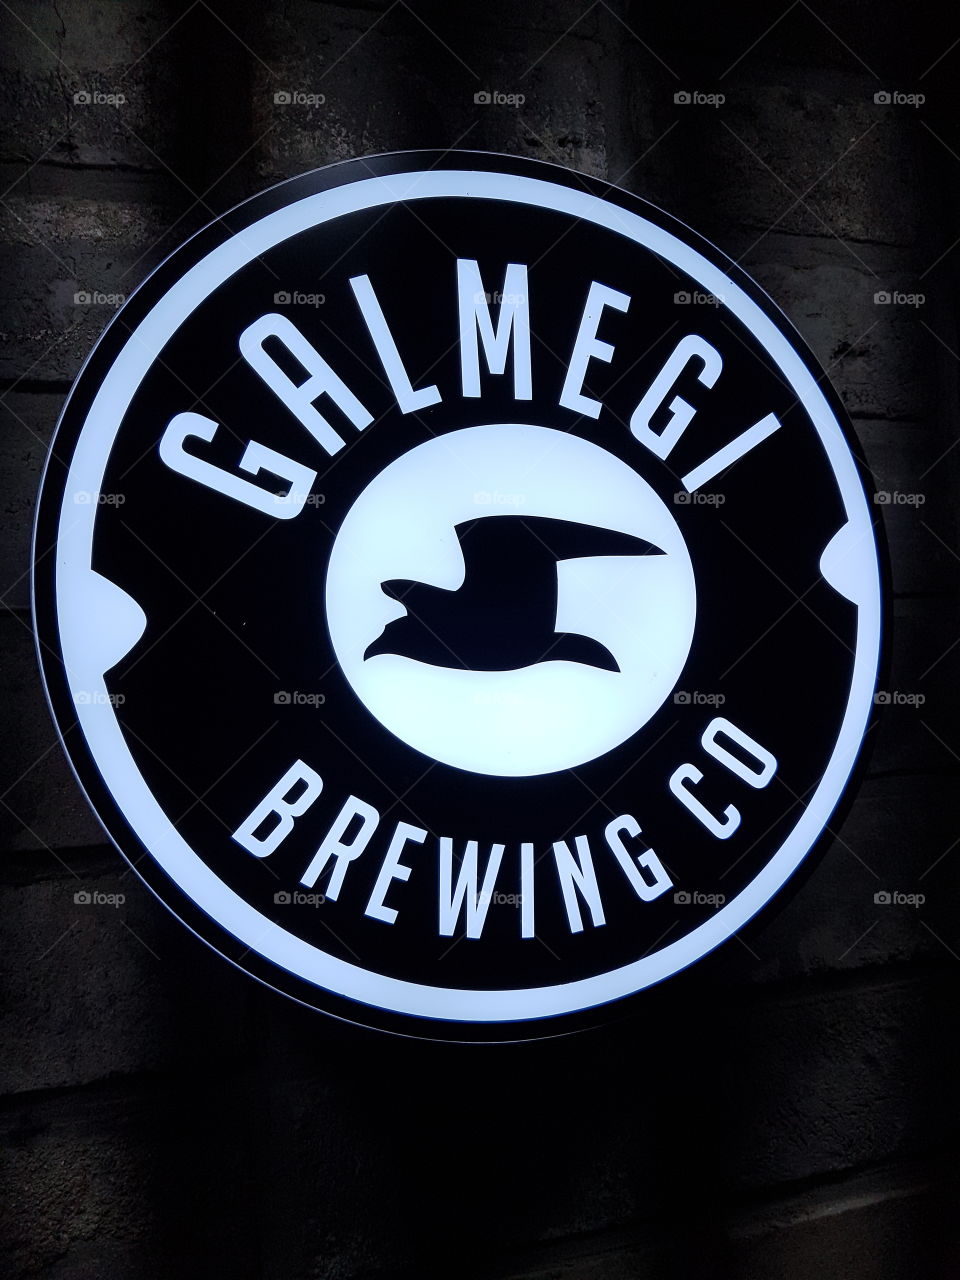 Galmegi Brewing co